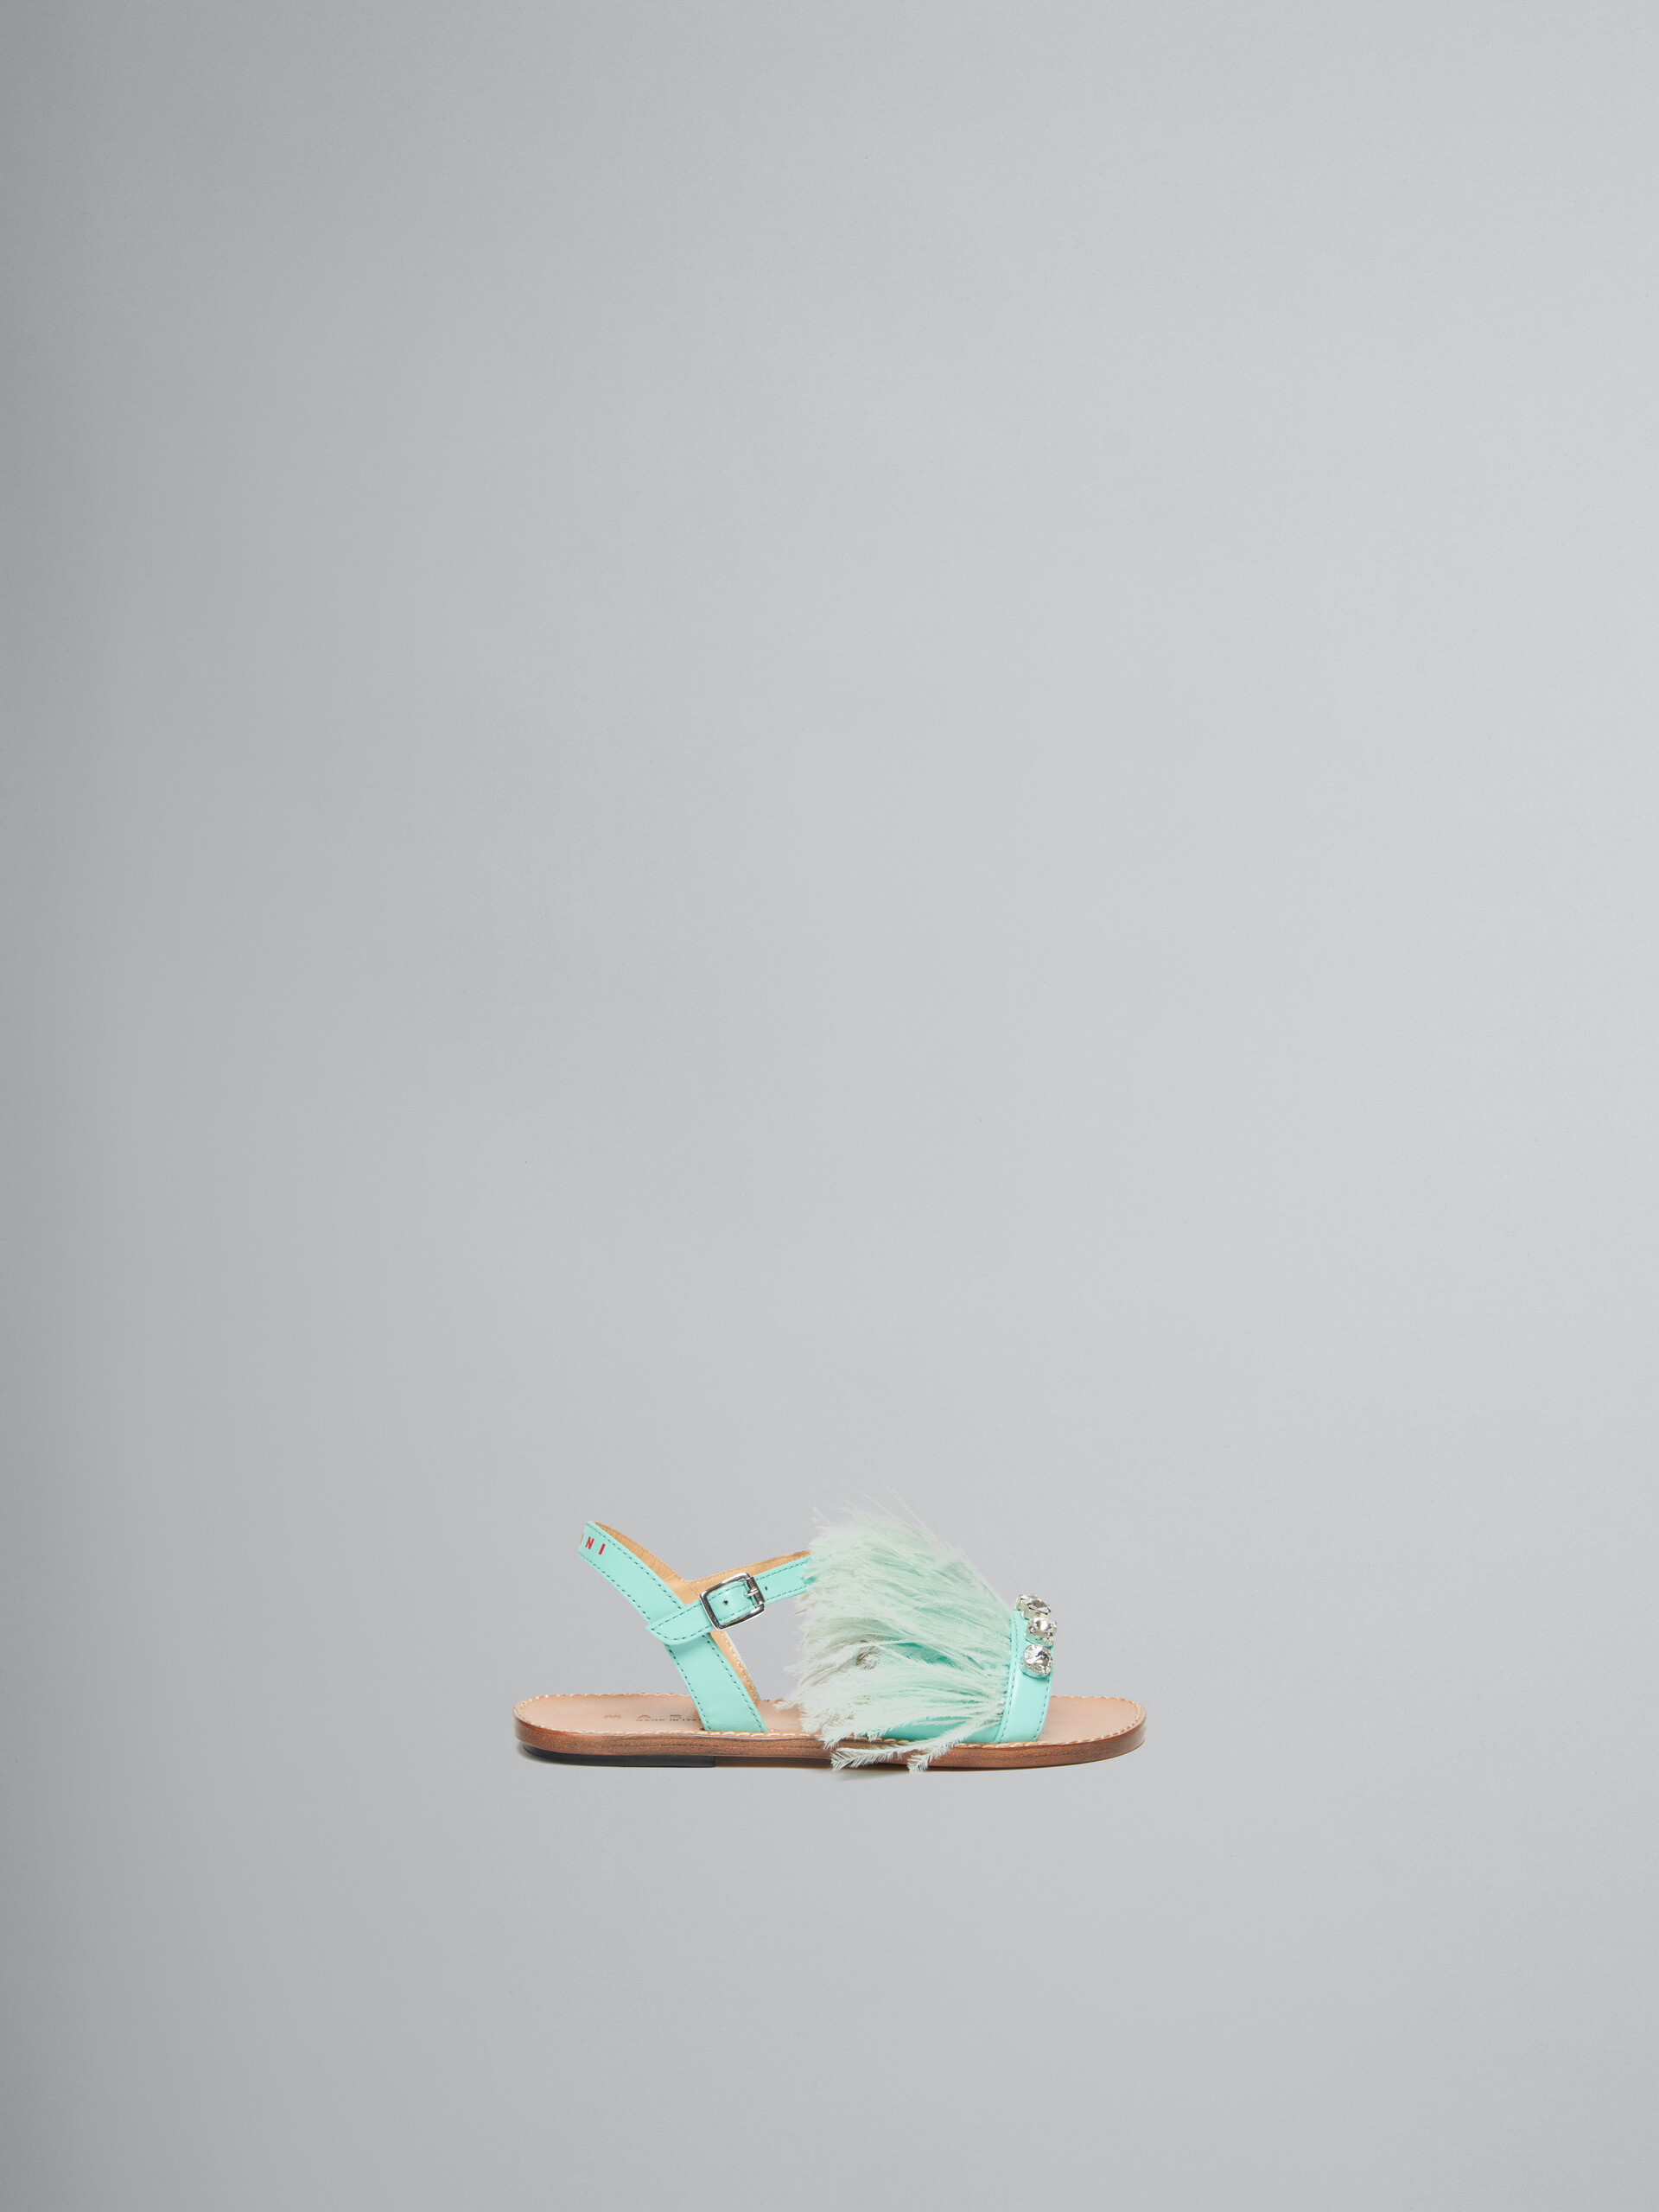 Sandales Marabou à plume turquoise - ENFANT - Image 1